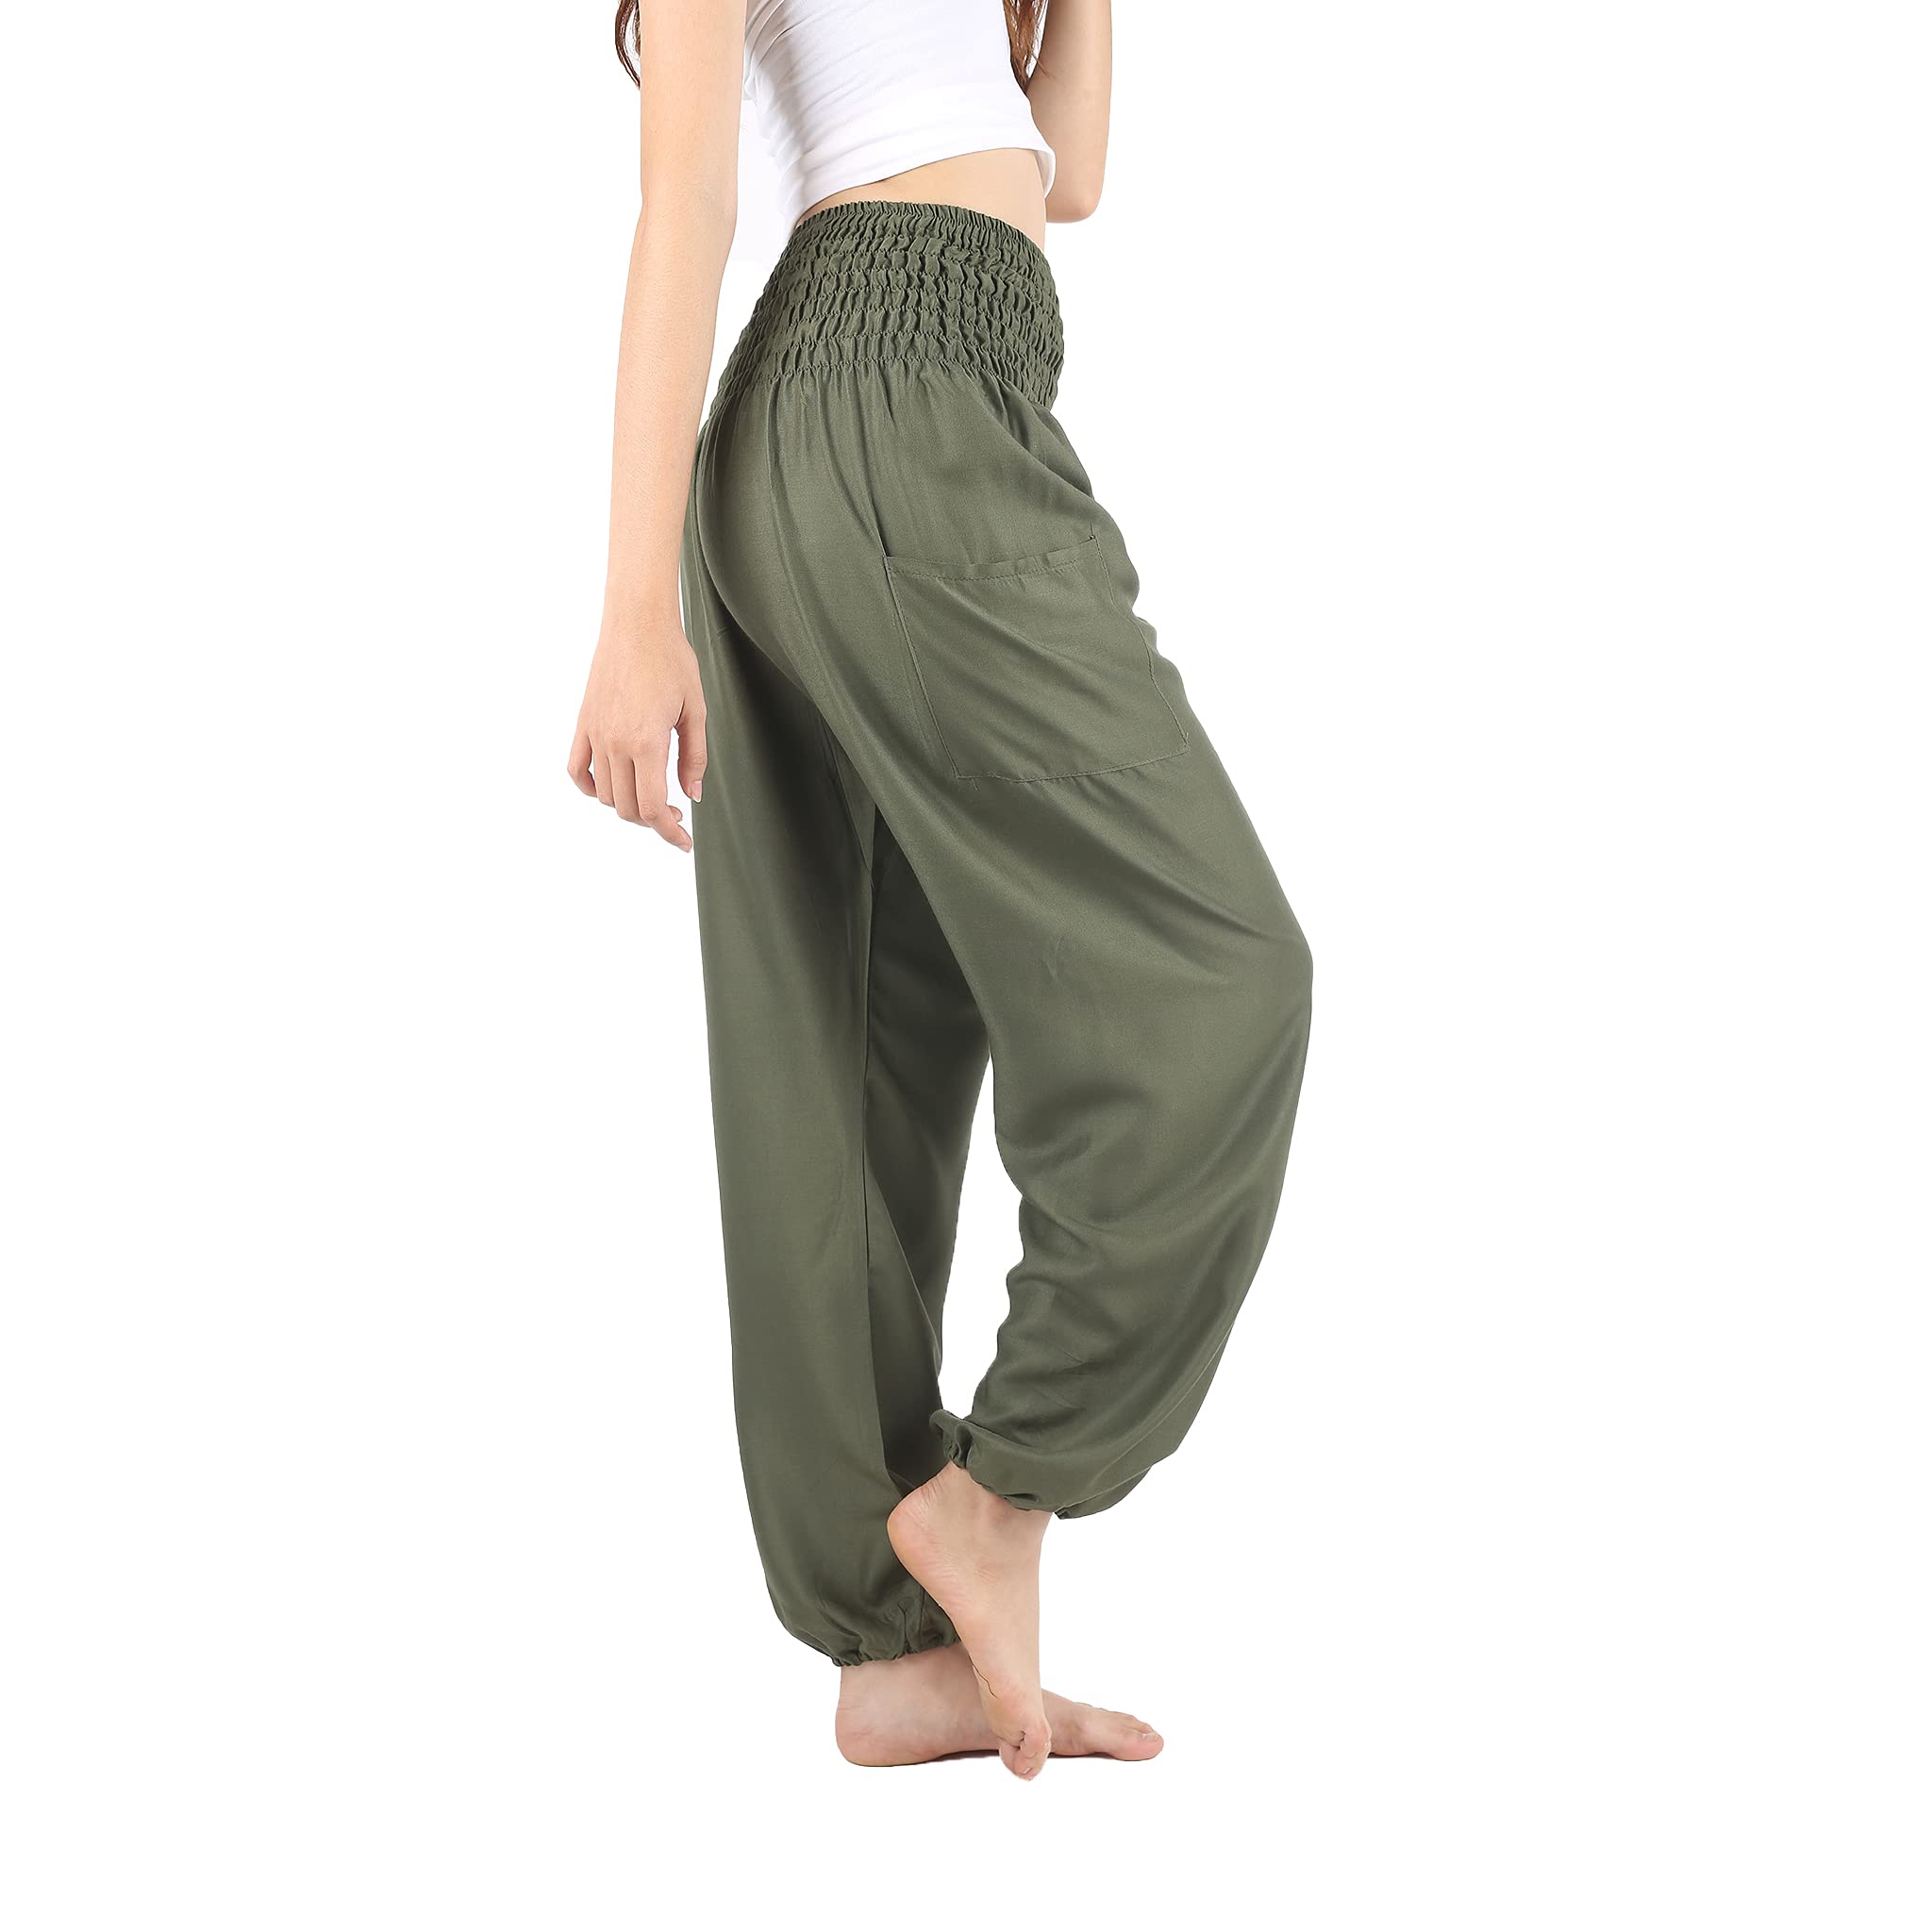 Amazon High-Waist Boho Harem Pants Are Super Comfy